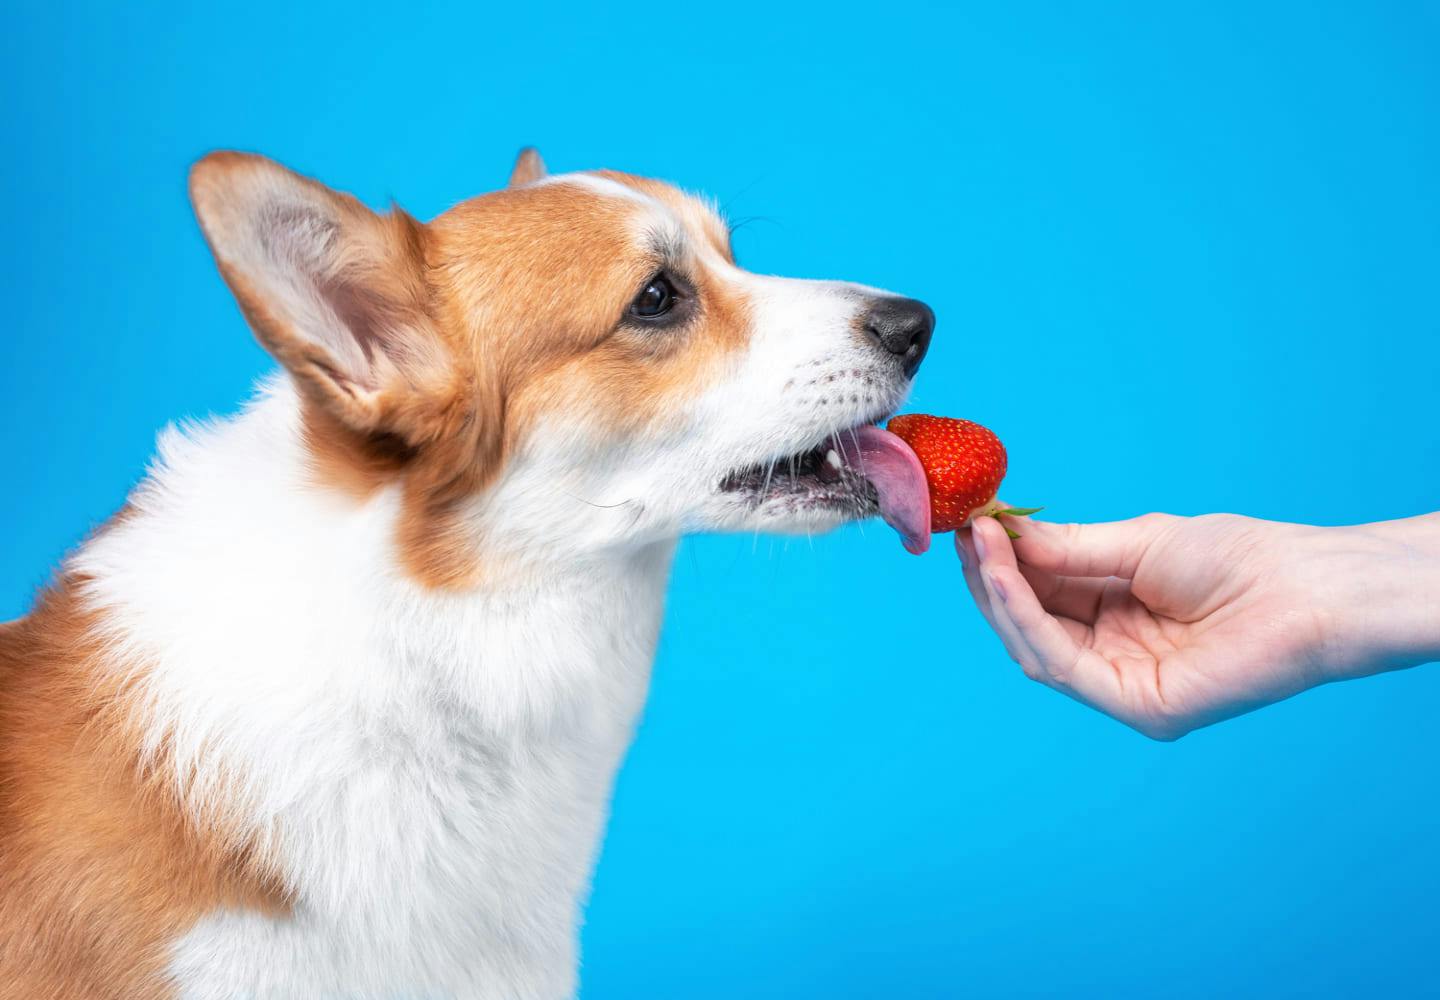 犬はいちごを食べても大丈夫！おすすめの与え方や注意点、1日の適量を解説【獣医師監修】